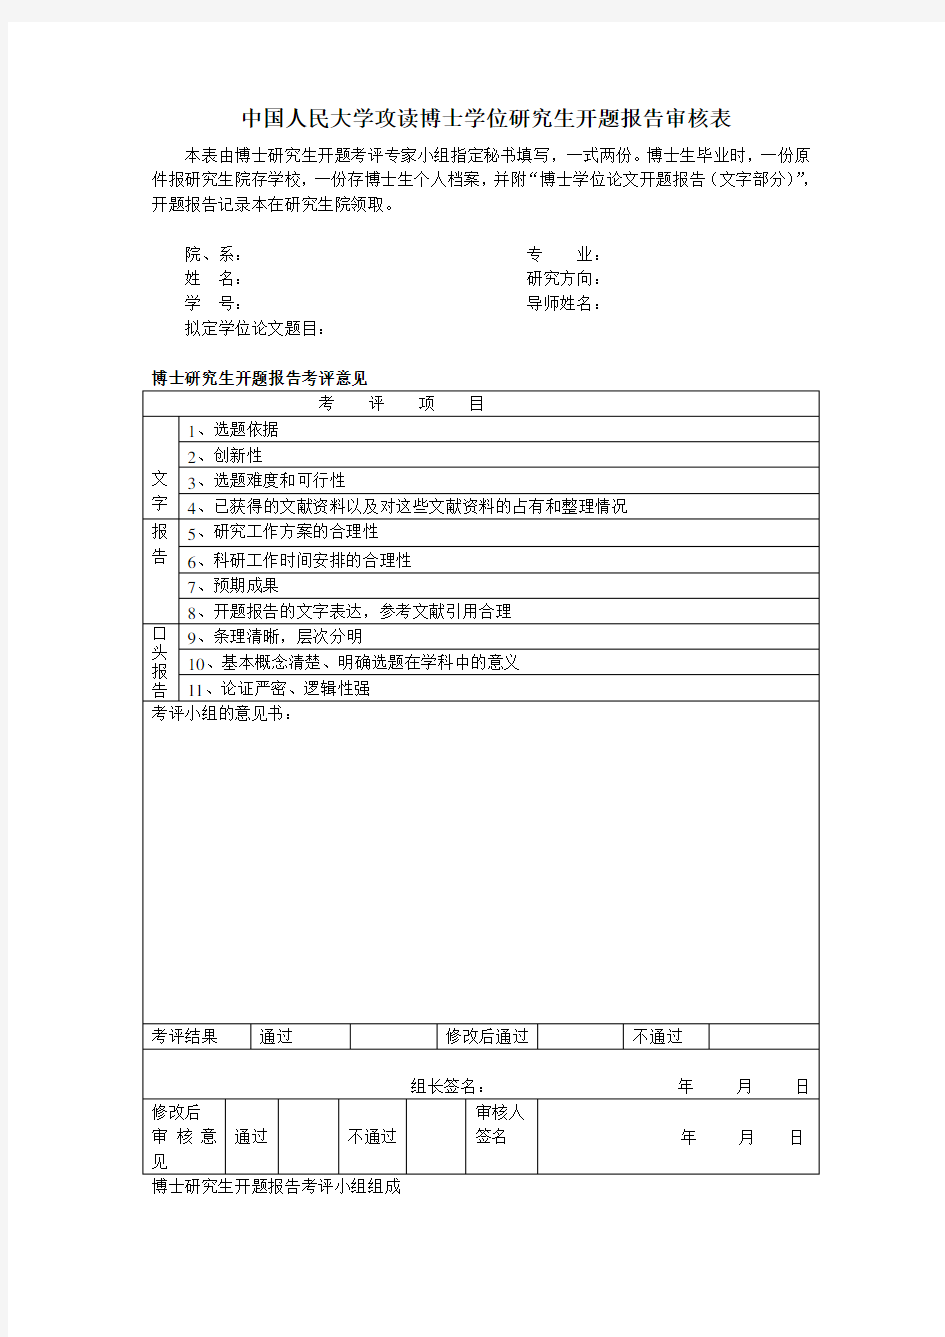 中国人民大学 攻读博士学位研究生开题报告审核表